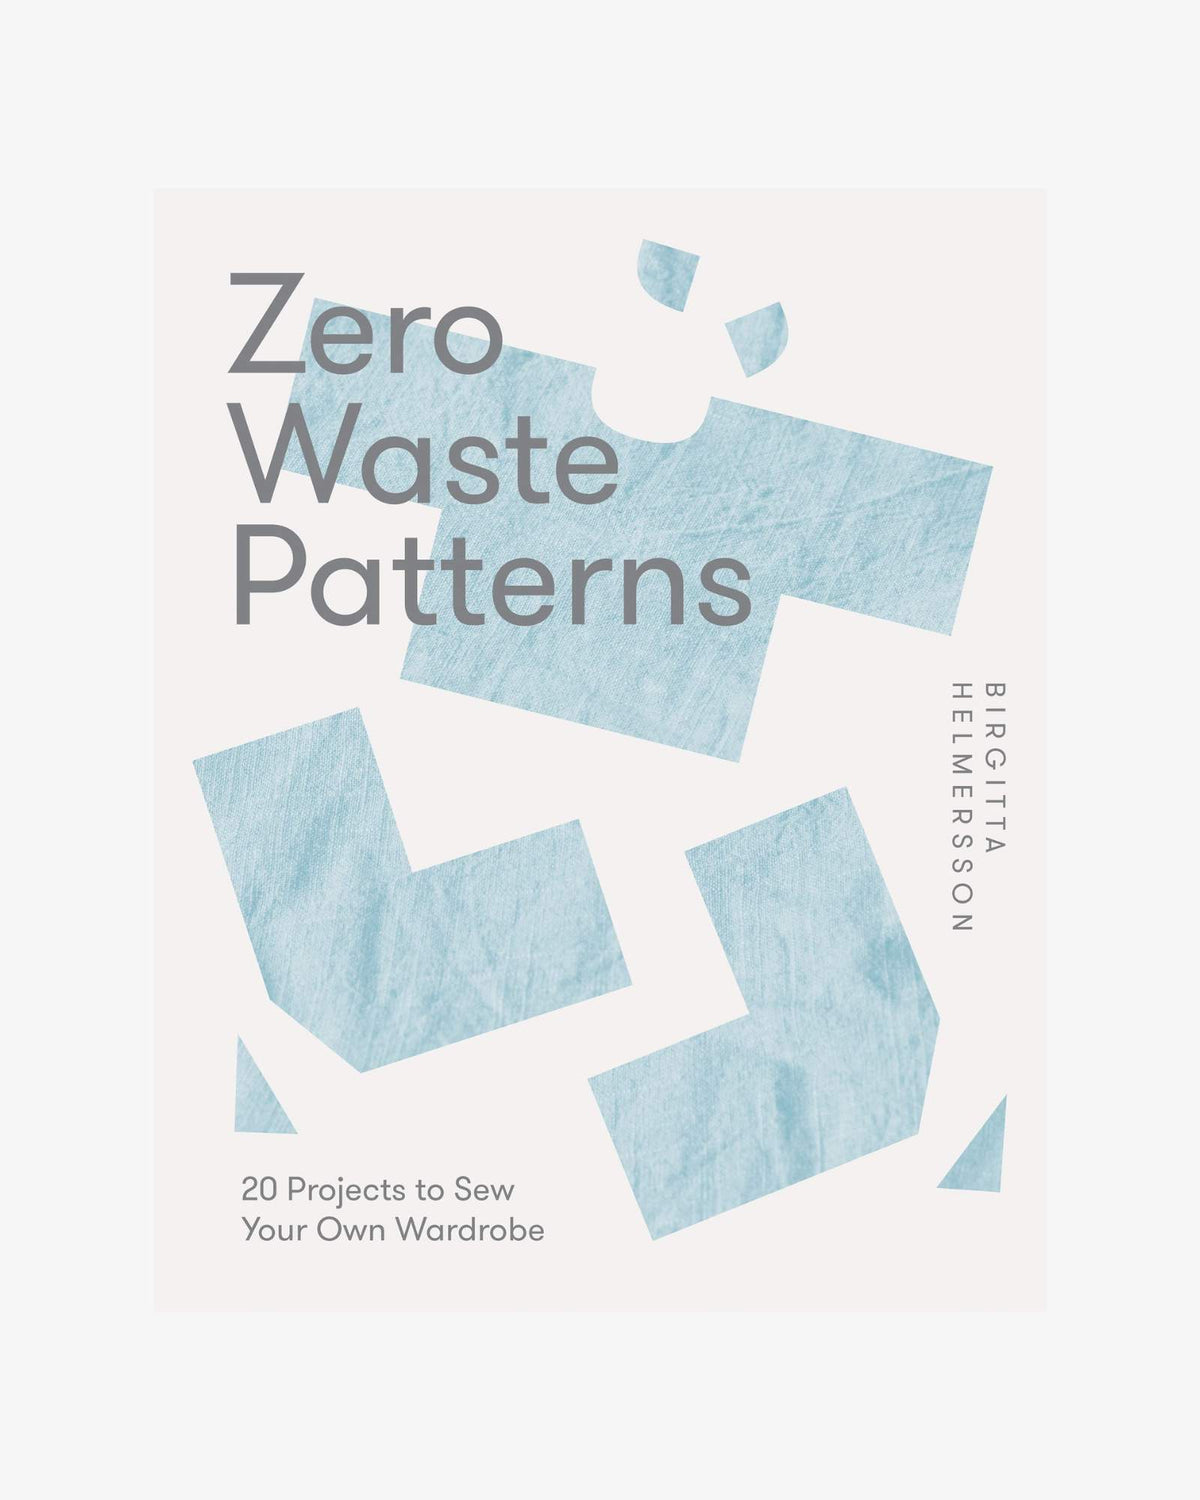 Zero Waste Patterns by Birgitta Helmersson